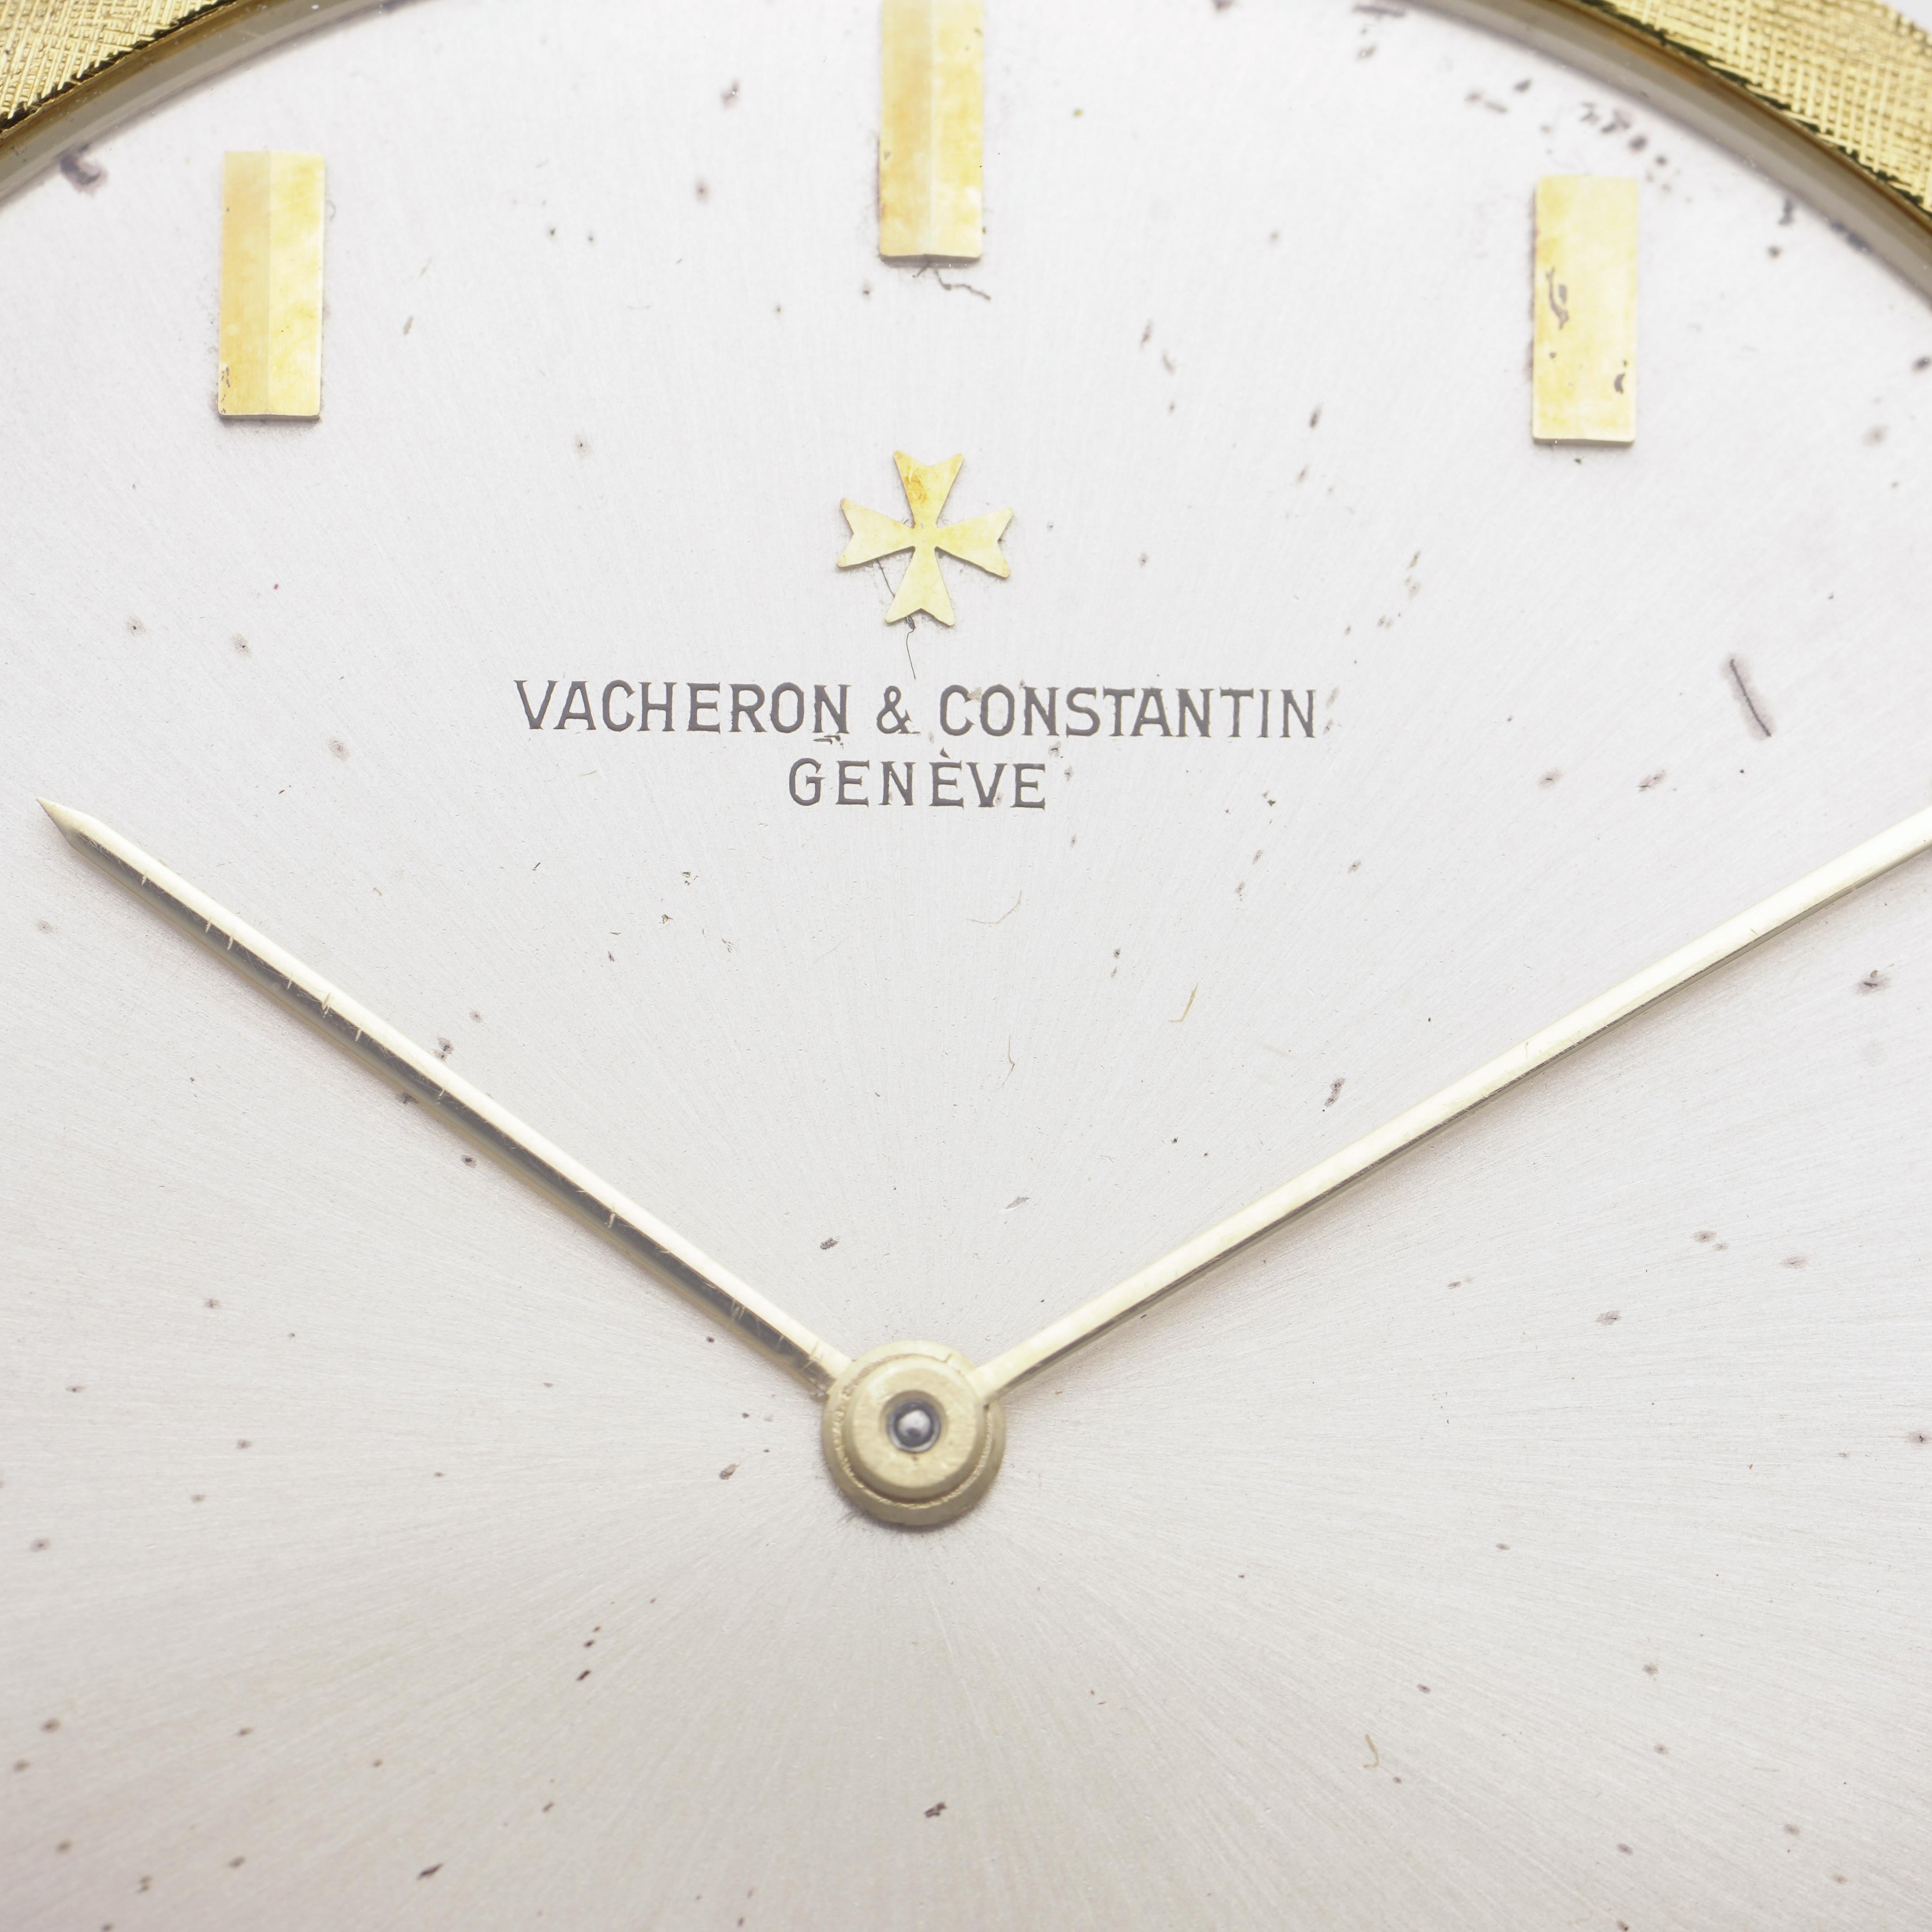 Vacheron Constantin 18kt. Gelbgold offenes Zifferblatt Taschenuhr mit gebürstetem Gold Finish.
Die Uhr ist besonders dünn.

Hergestellt in der Schweiz, CIRCA 1960er Jahre
Signiert: Gehäuse, Zifferblatt und Uhrwerk, gepunzt mit 18kt. Gold.
Uhrwerk: